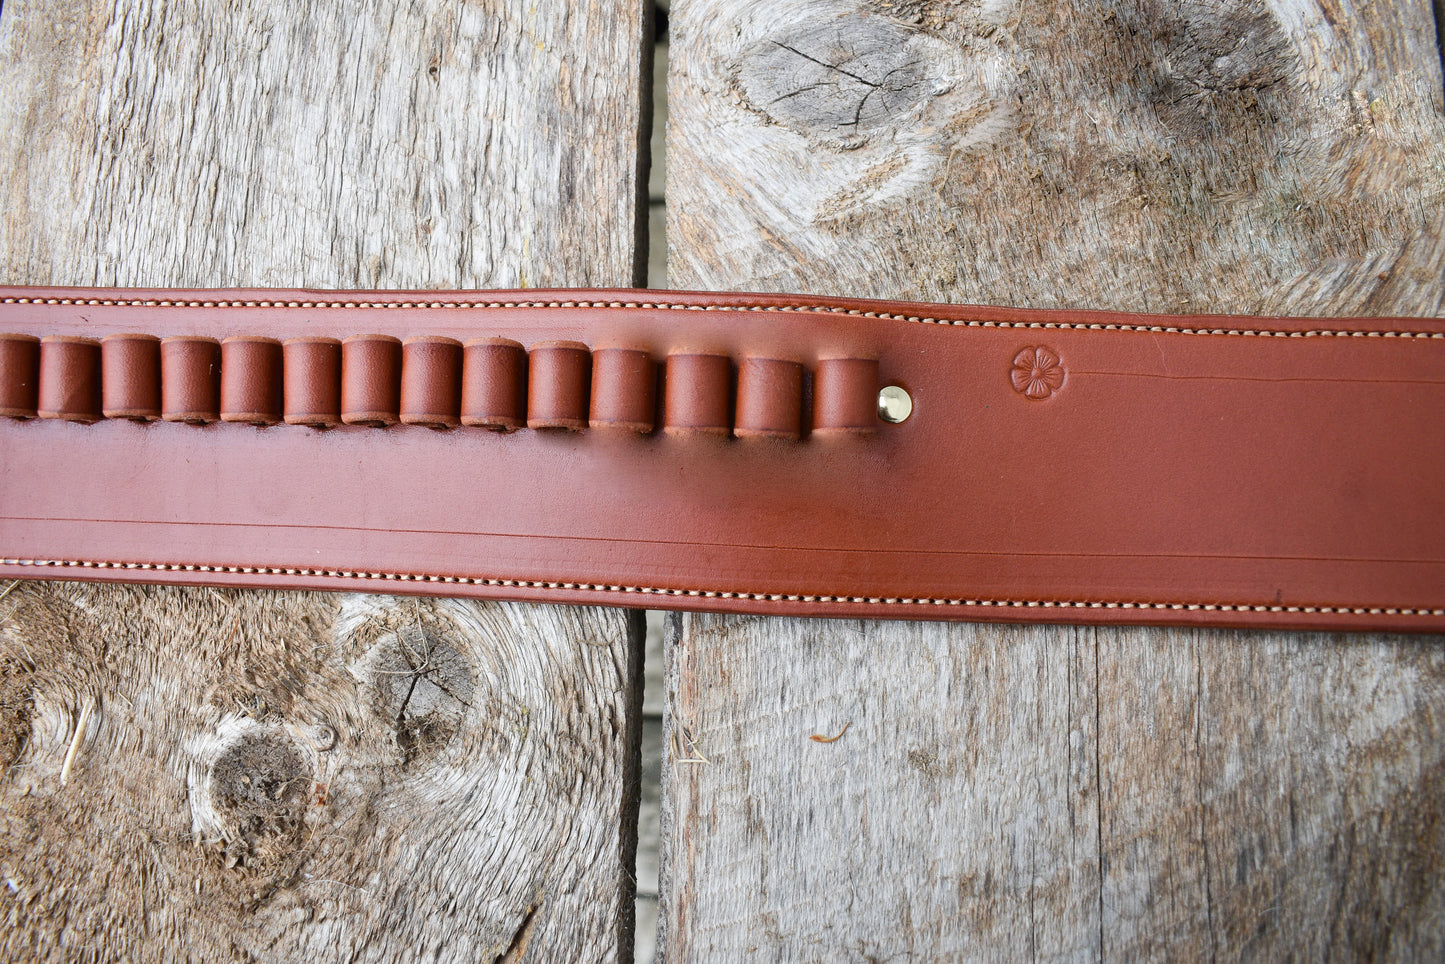 La ceinture de cartouche en cuir Thamesville Marauder, la ceinture de cartouche occidentale avec un seul étui Fast Draw, doublée